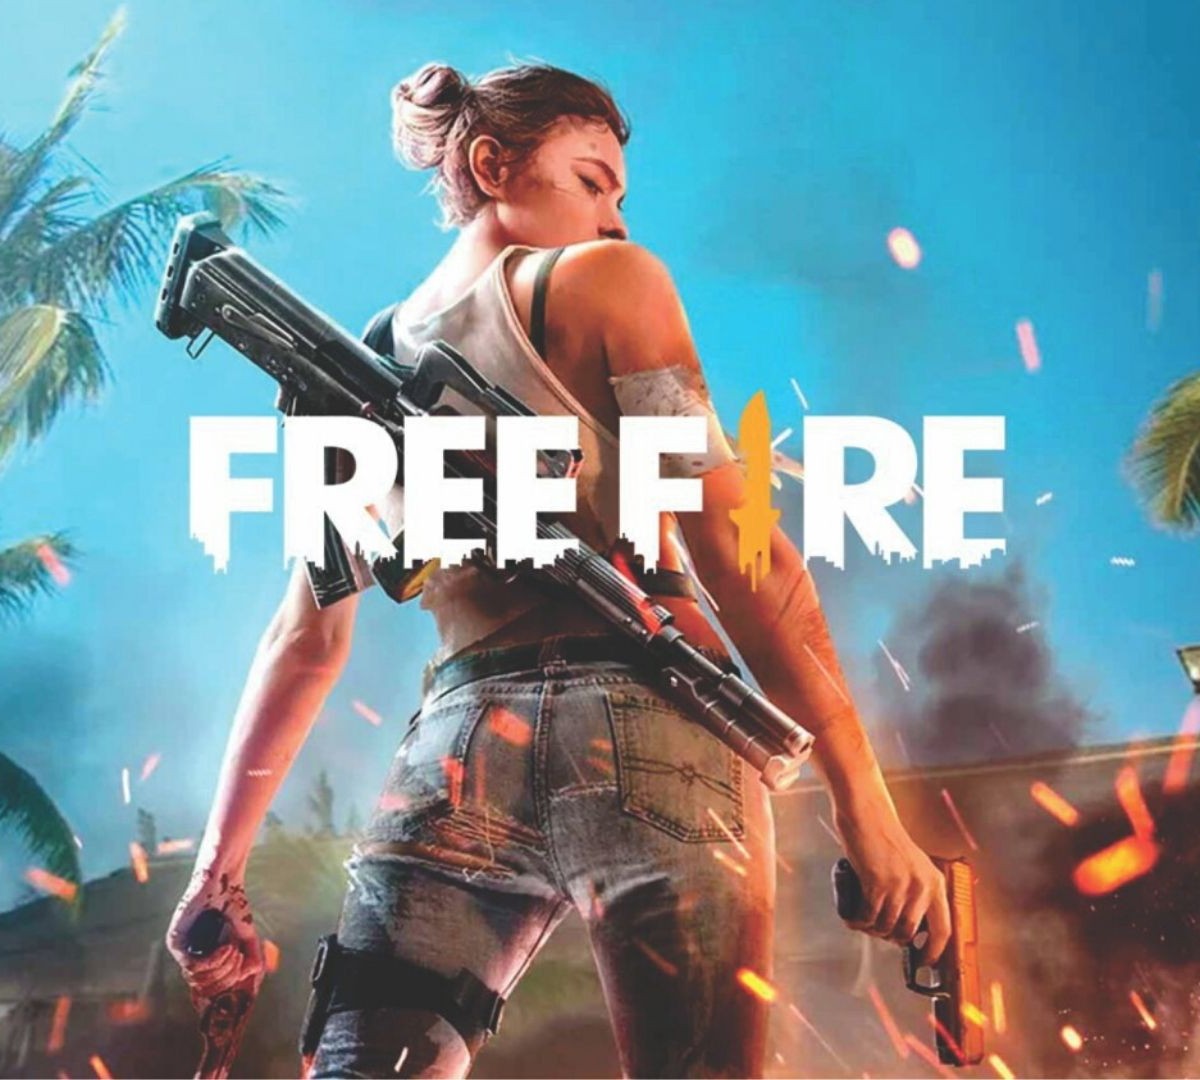 Free Fire: jogos do Brasil na Copa do Mundo dão prêmios grátis dentro do  jogo